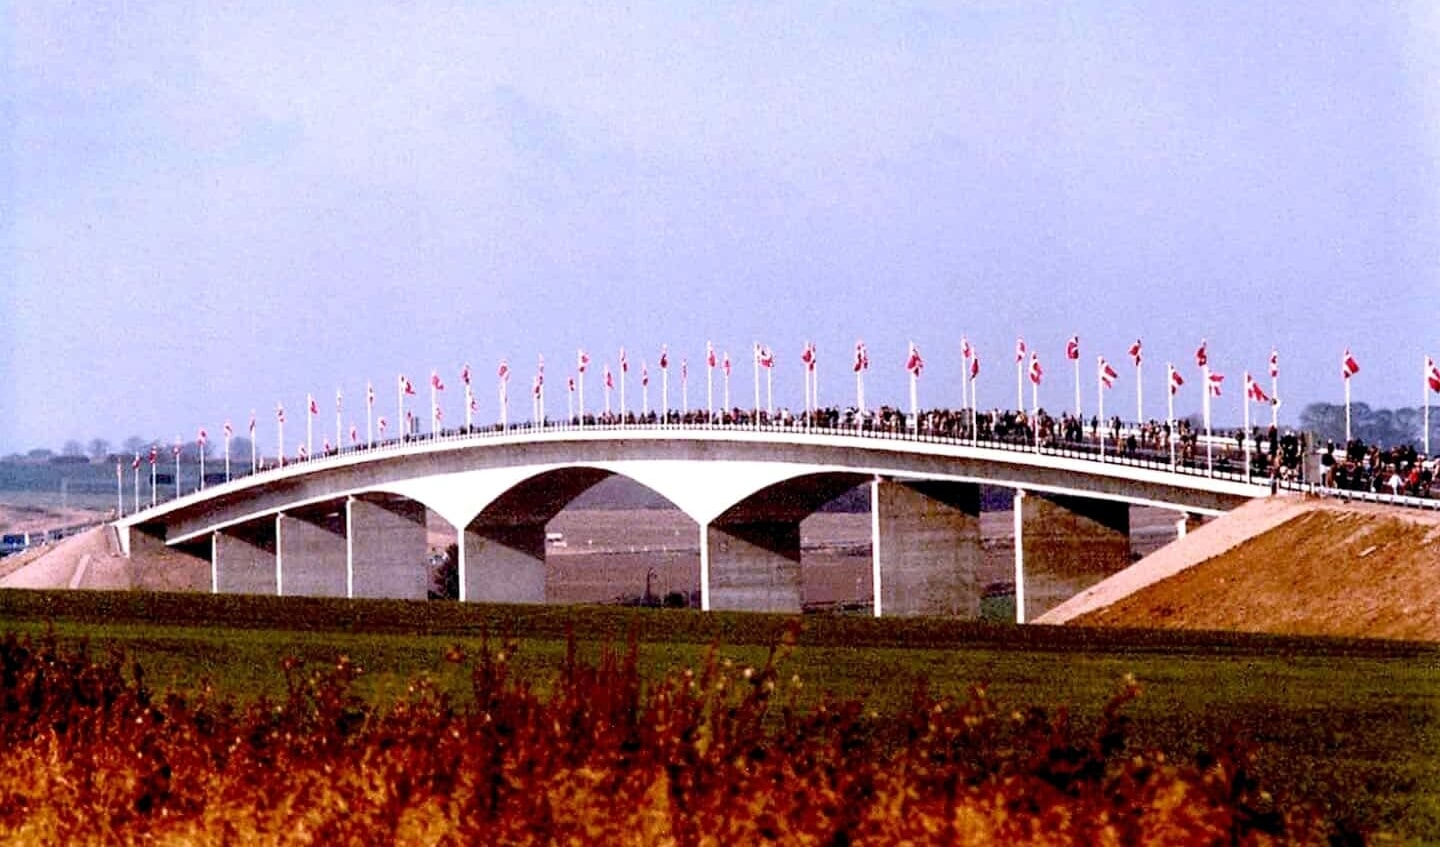 Gennem en hel weekend kunne folk gå over broen, da den stod færdig i oktober 1981. Foto:
